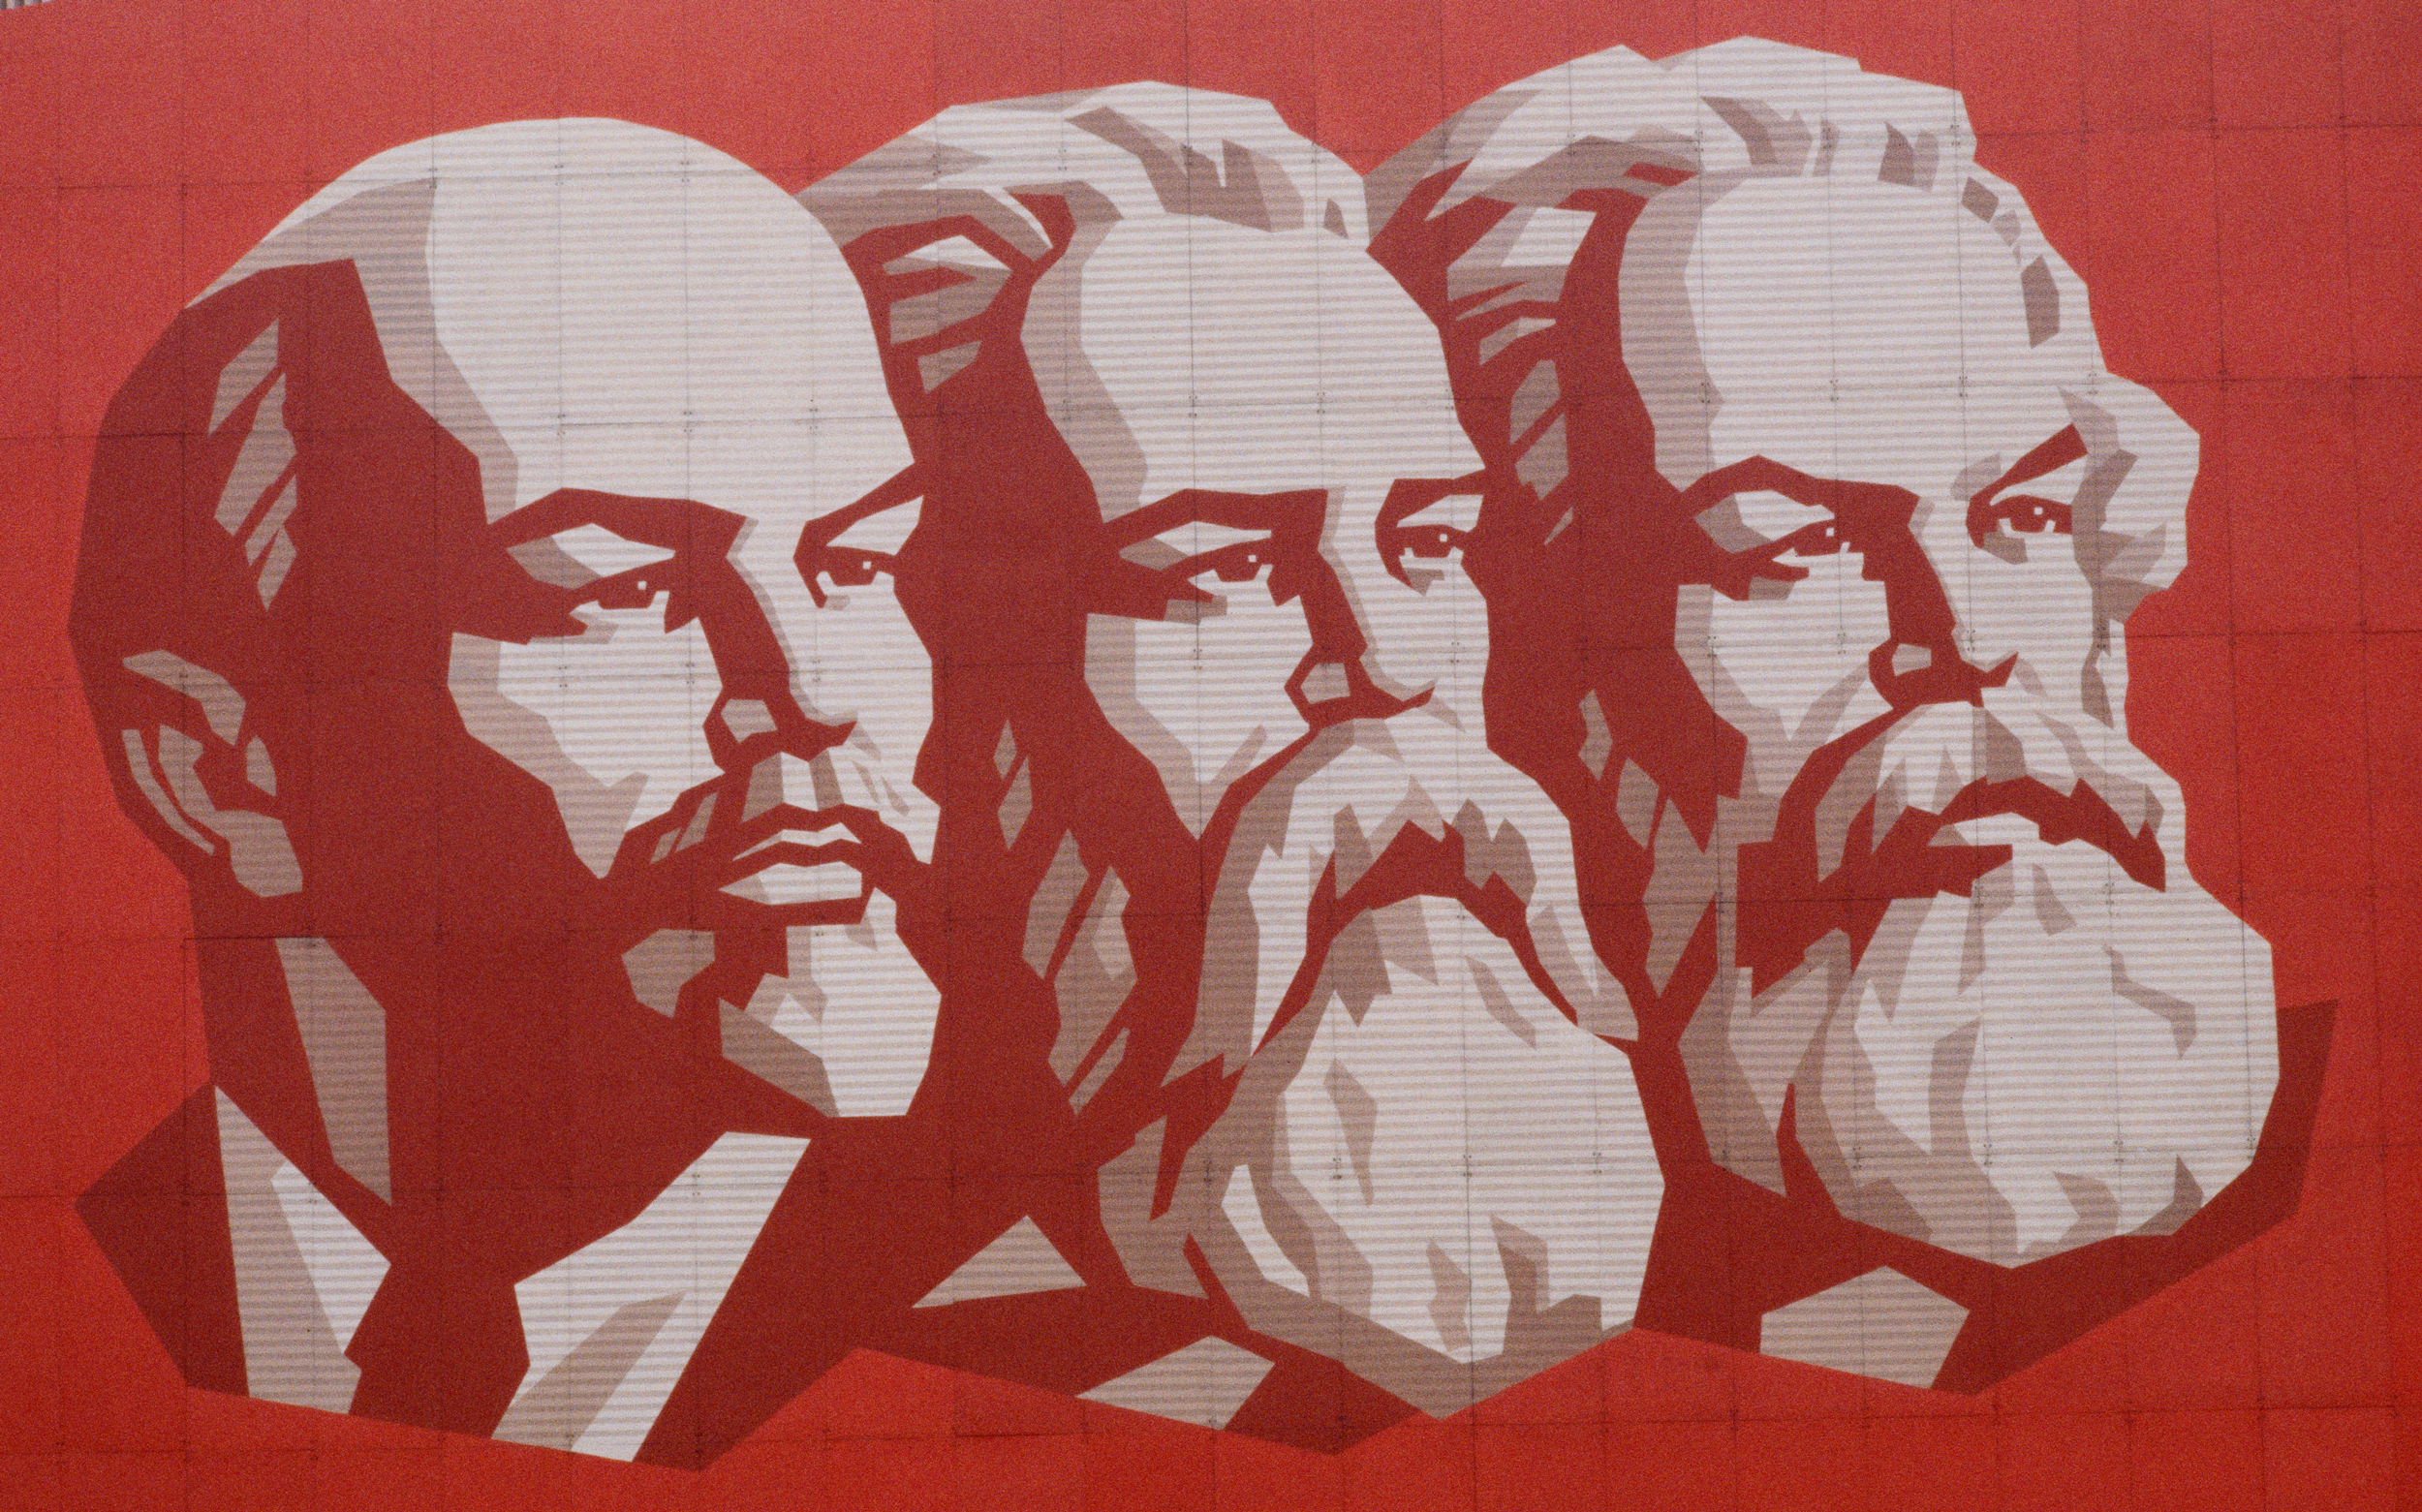 Plakat mit Wladimir Lenin, Friedrich Engels und Karl Marx anlässlich des 65. Jahrestags der russischen Oktoberrevolution. Das Bild illustriert einen Kommentar über die KPÖ und den Kommunismus.